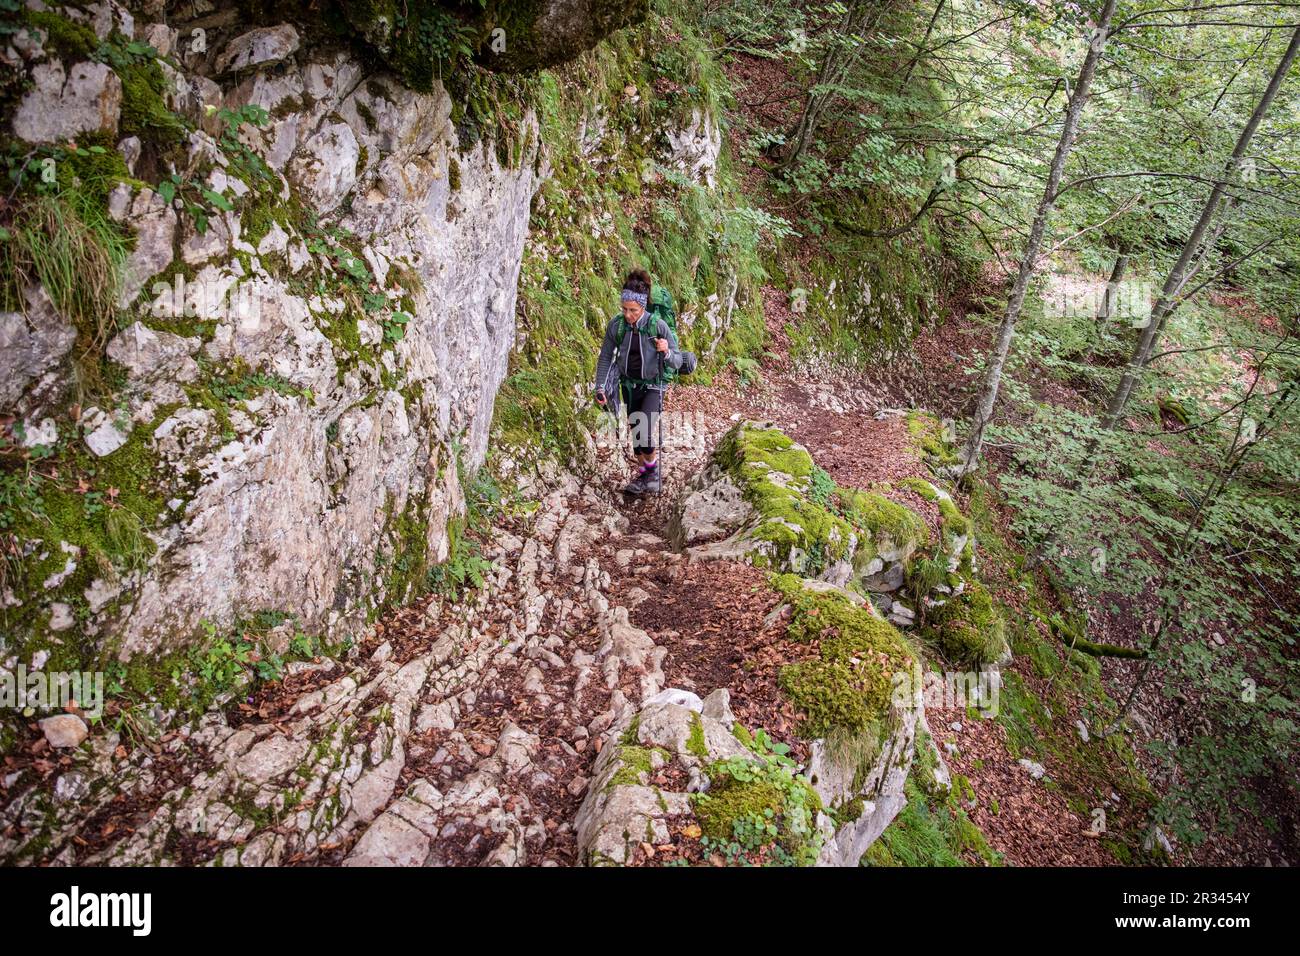 ascenso por el barranco de Anaye, alta ruta pirenaica, región de Aquitania, departamento de Pirineos Atlánticos, Francia. Stock Photo